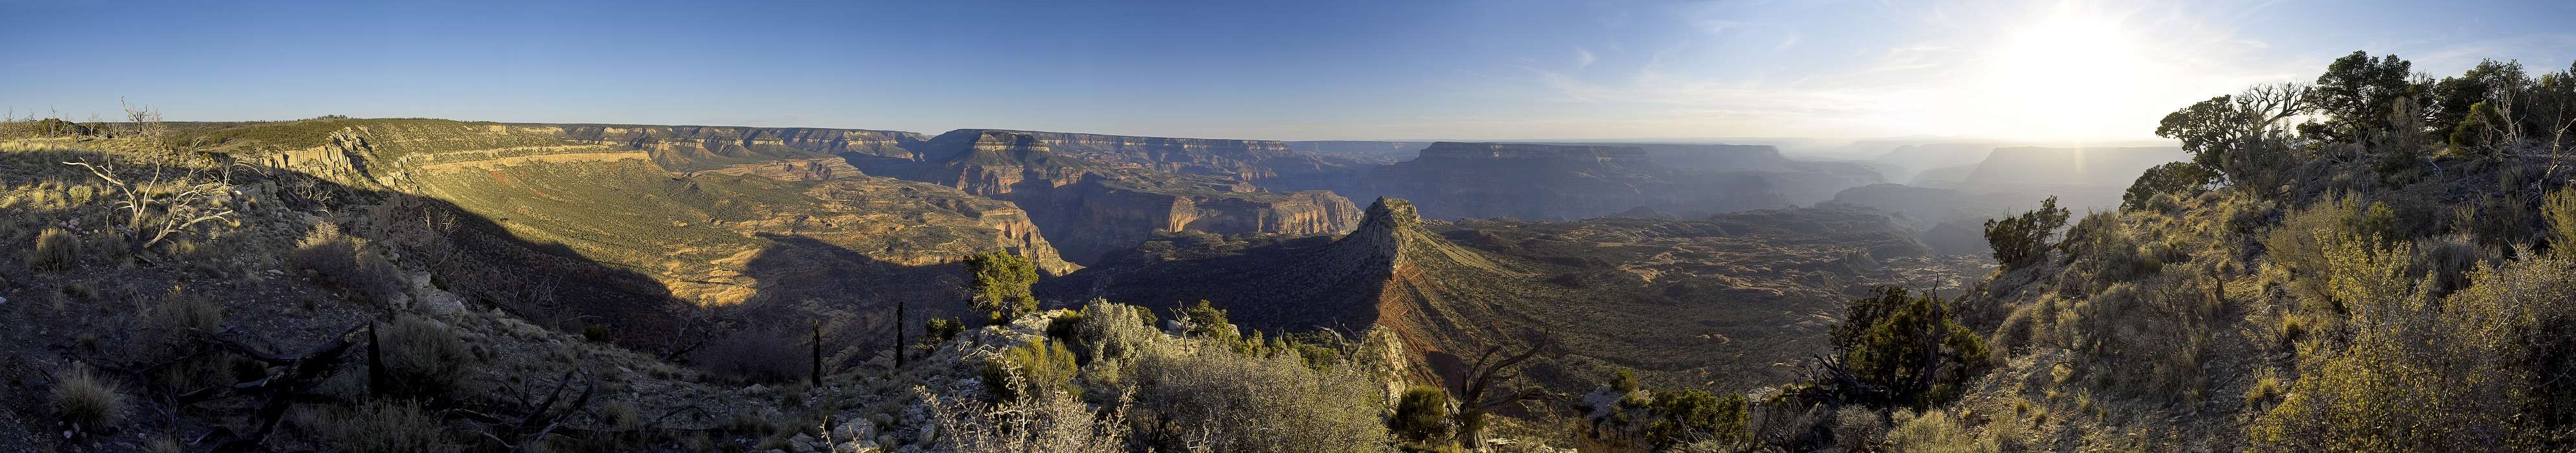  , The Grand Canyon, Crazy Jug Point, Jakob Lake, Arizona, United States, img05585-05603.jpg